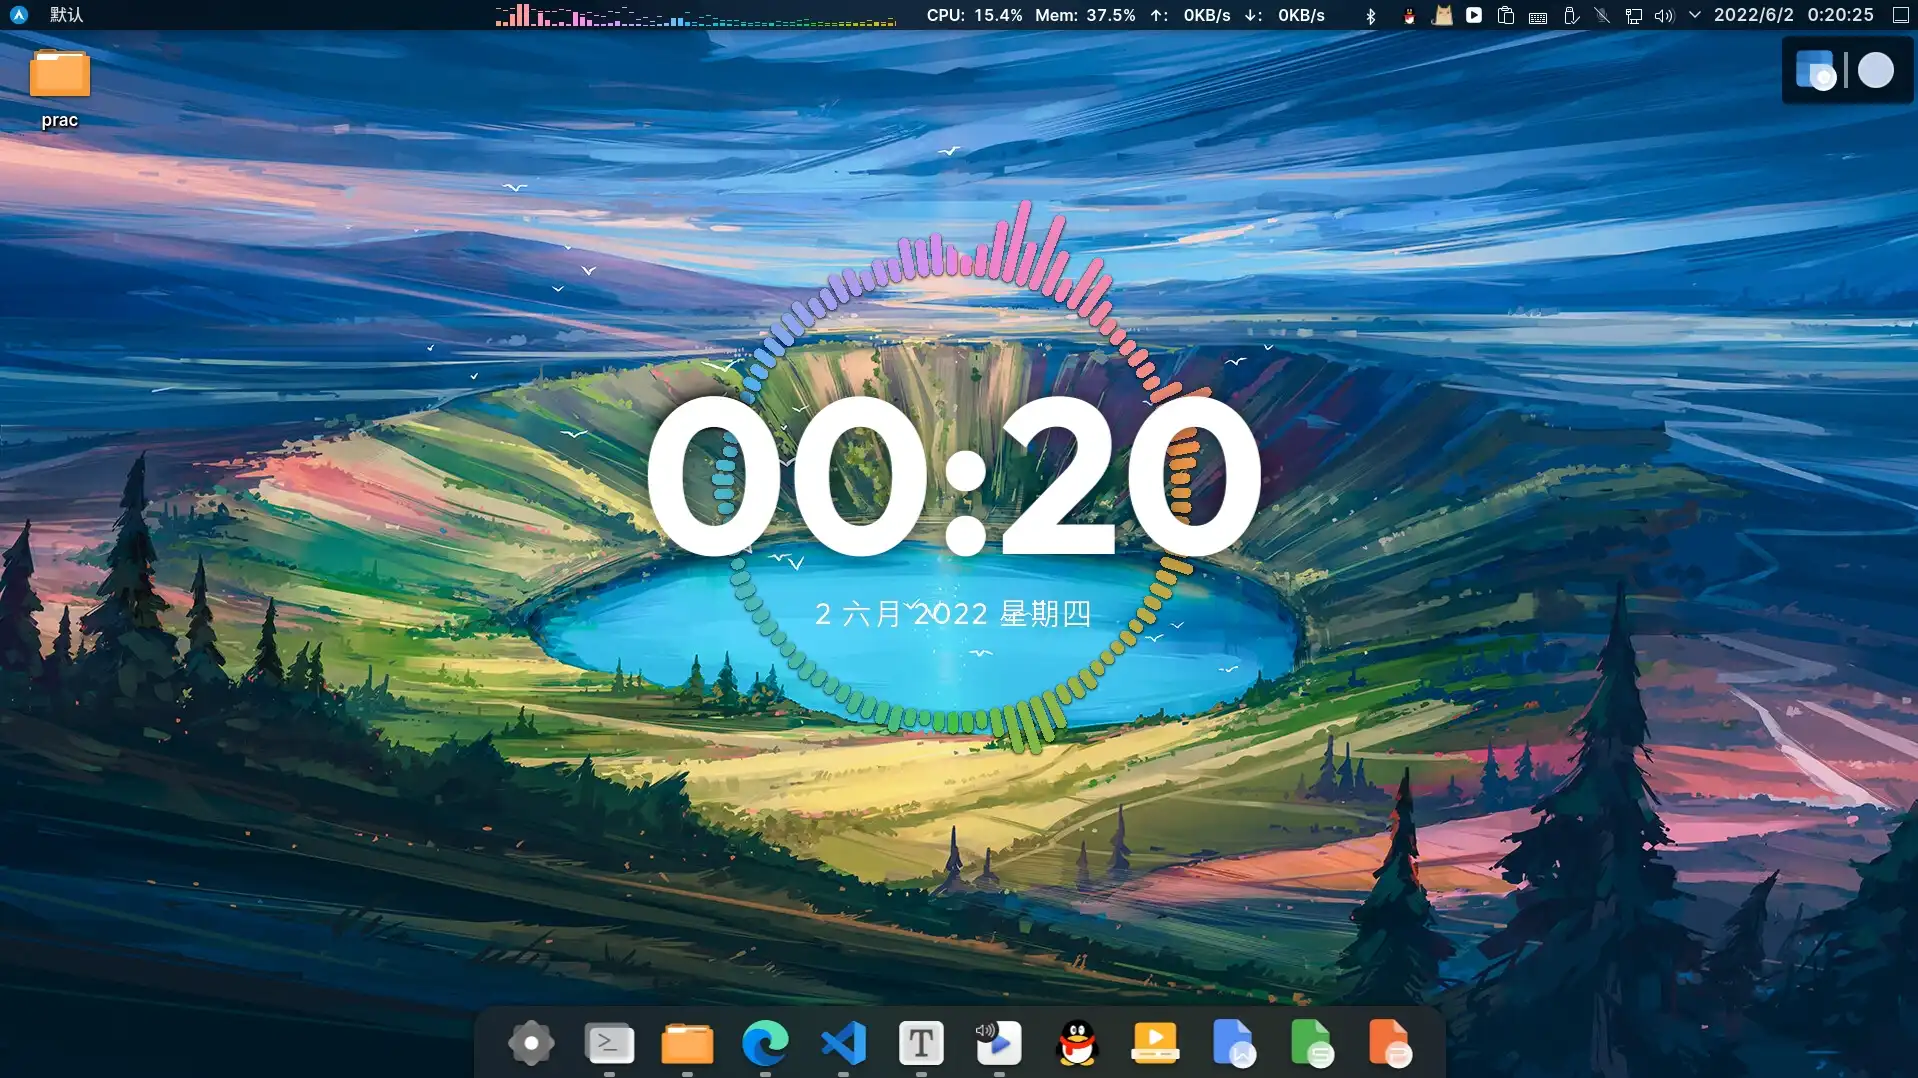 文章《KDE 终极美化指南》中展示的KDE桌面